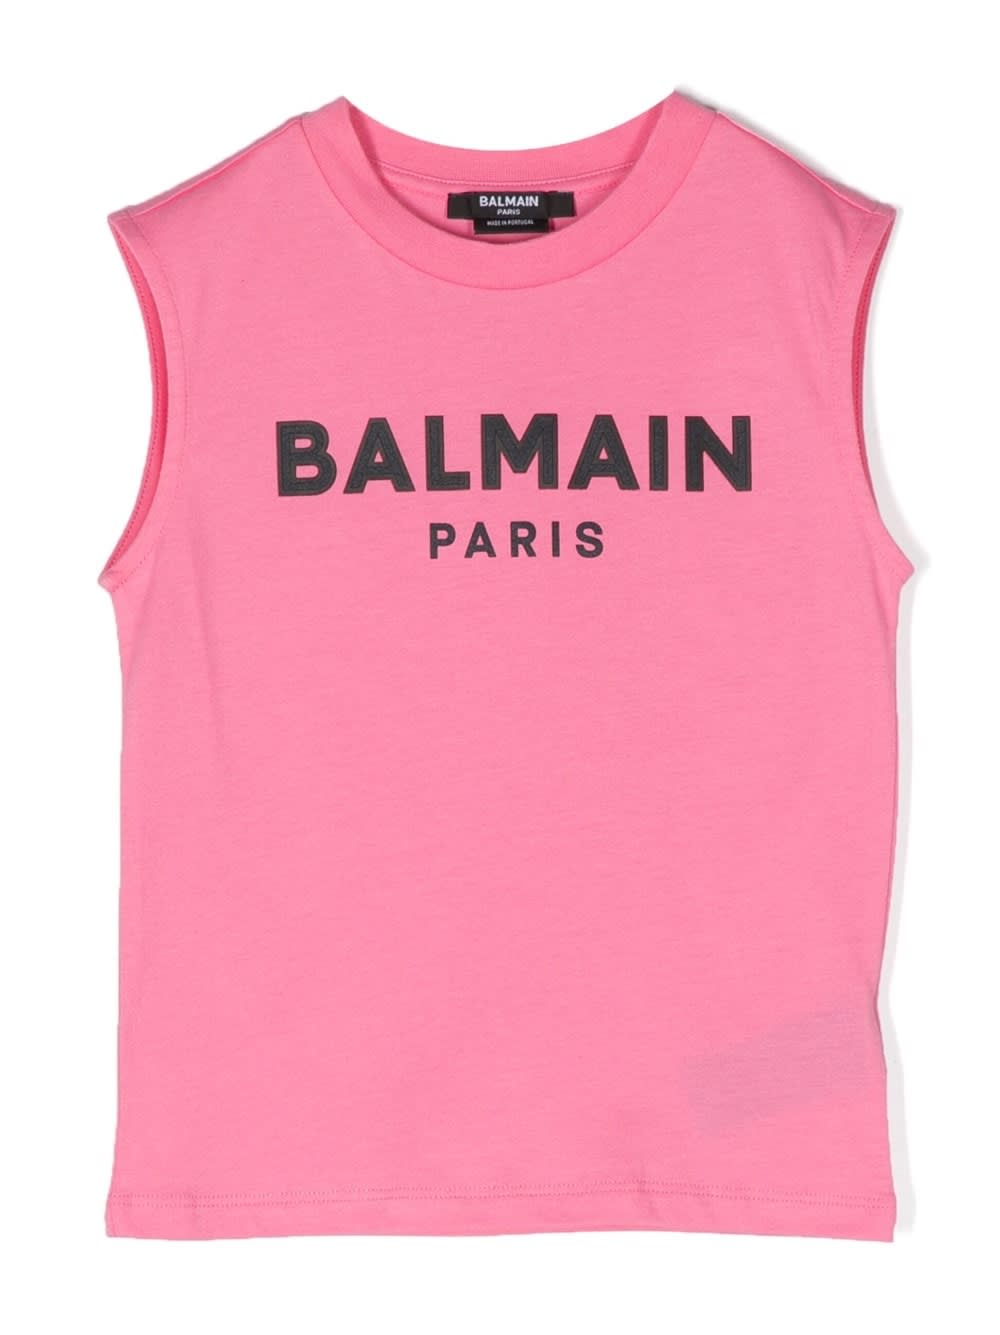 Balmain Kids' Sleeveless Top In Pink